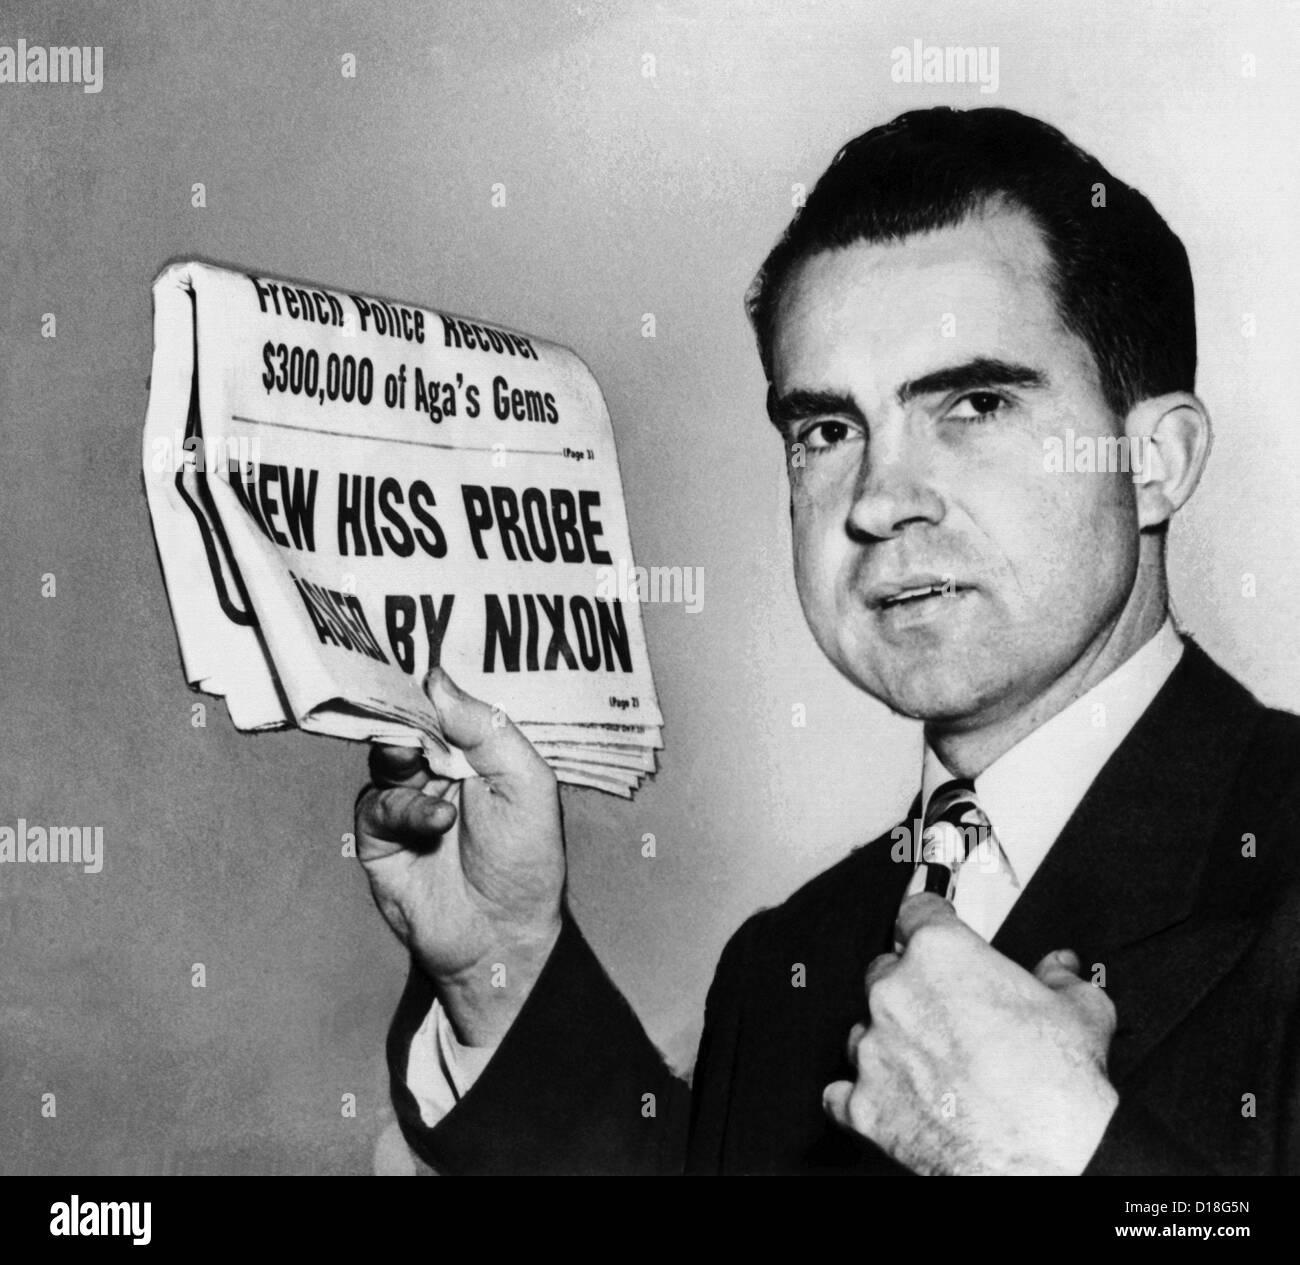 Senator Richard Nixon fordert Fortsetzung des HUAC Alger Hiss Untersuchung. 27. Januar 1950 Schlagzeile lautet: neue Hiss Probe gefragt Stockfoto